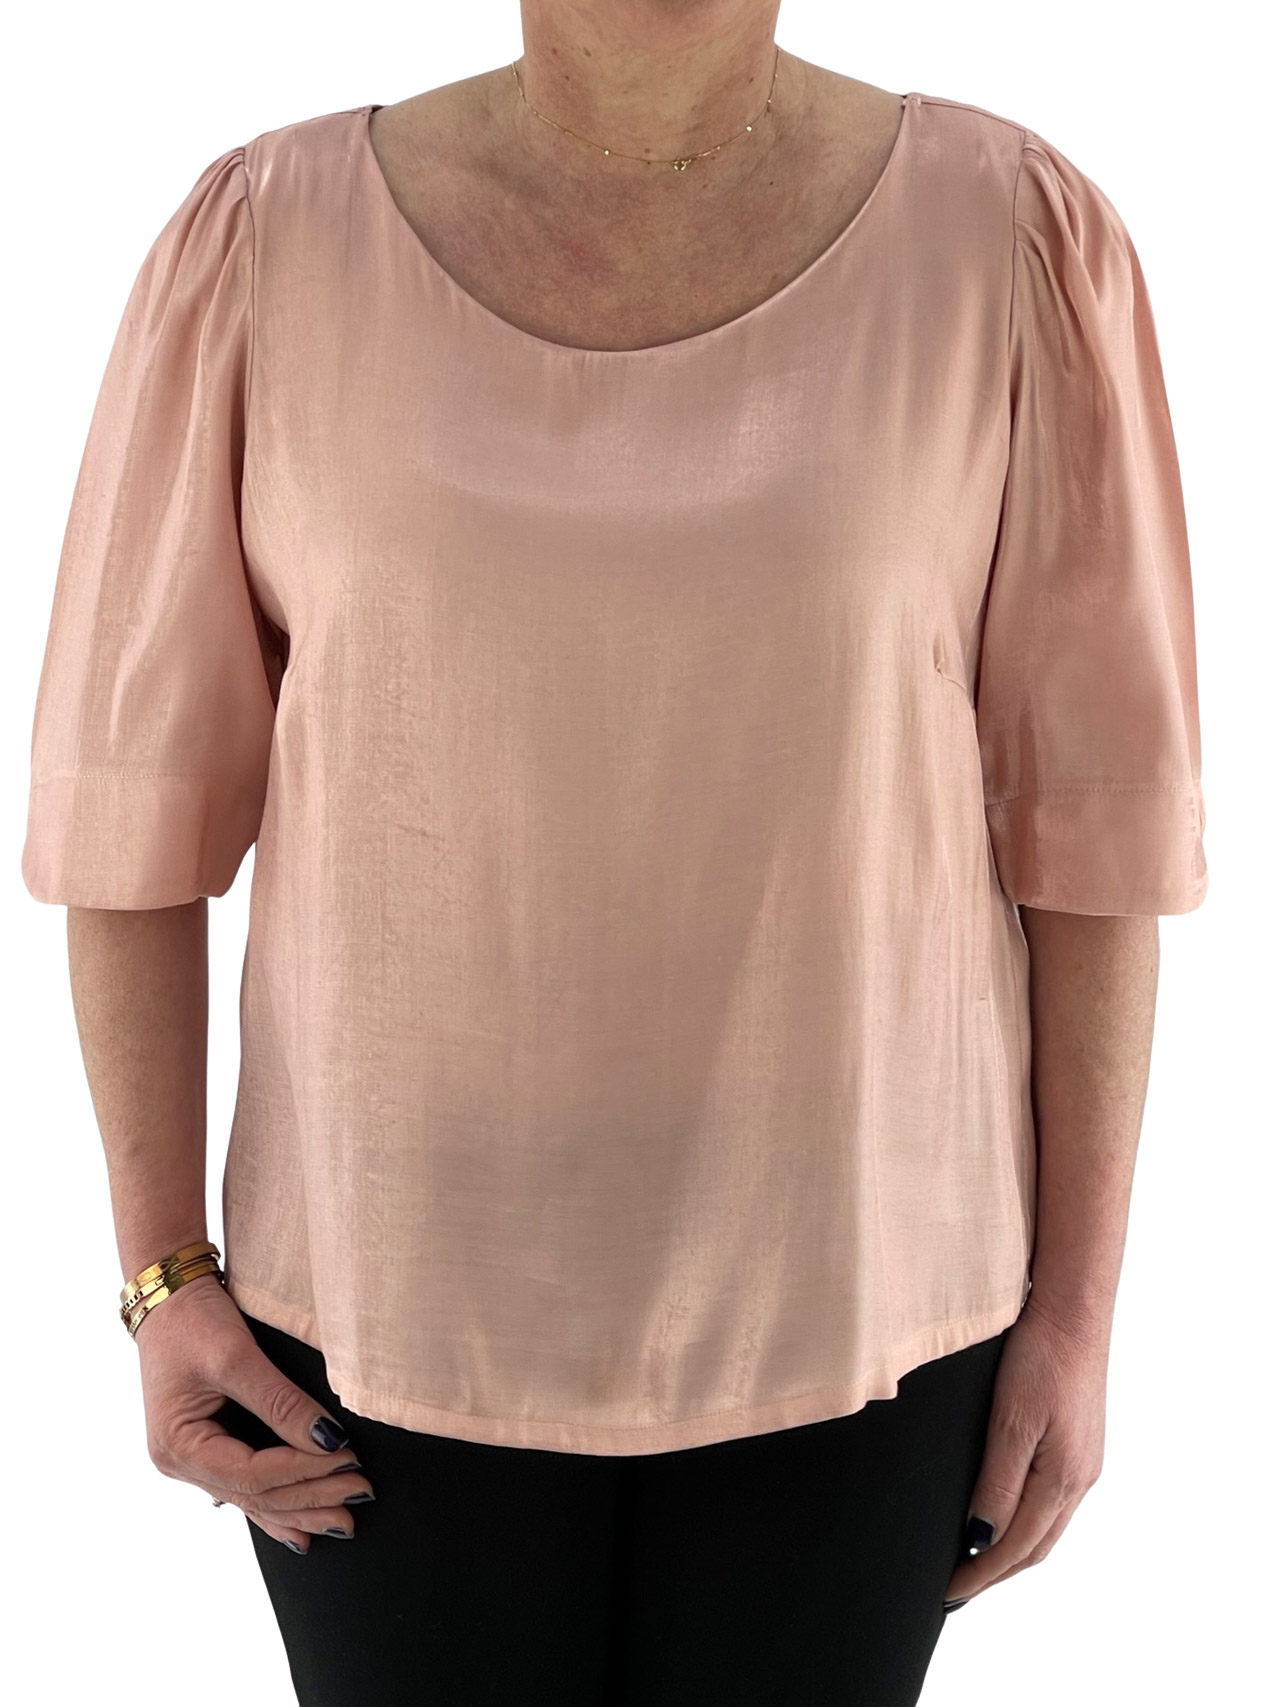 Μπλούζα γυναικεία μονόχρωμη με πιετάκια στους ώμους κωδ. MB33510